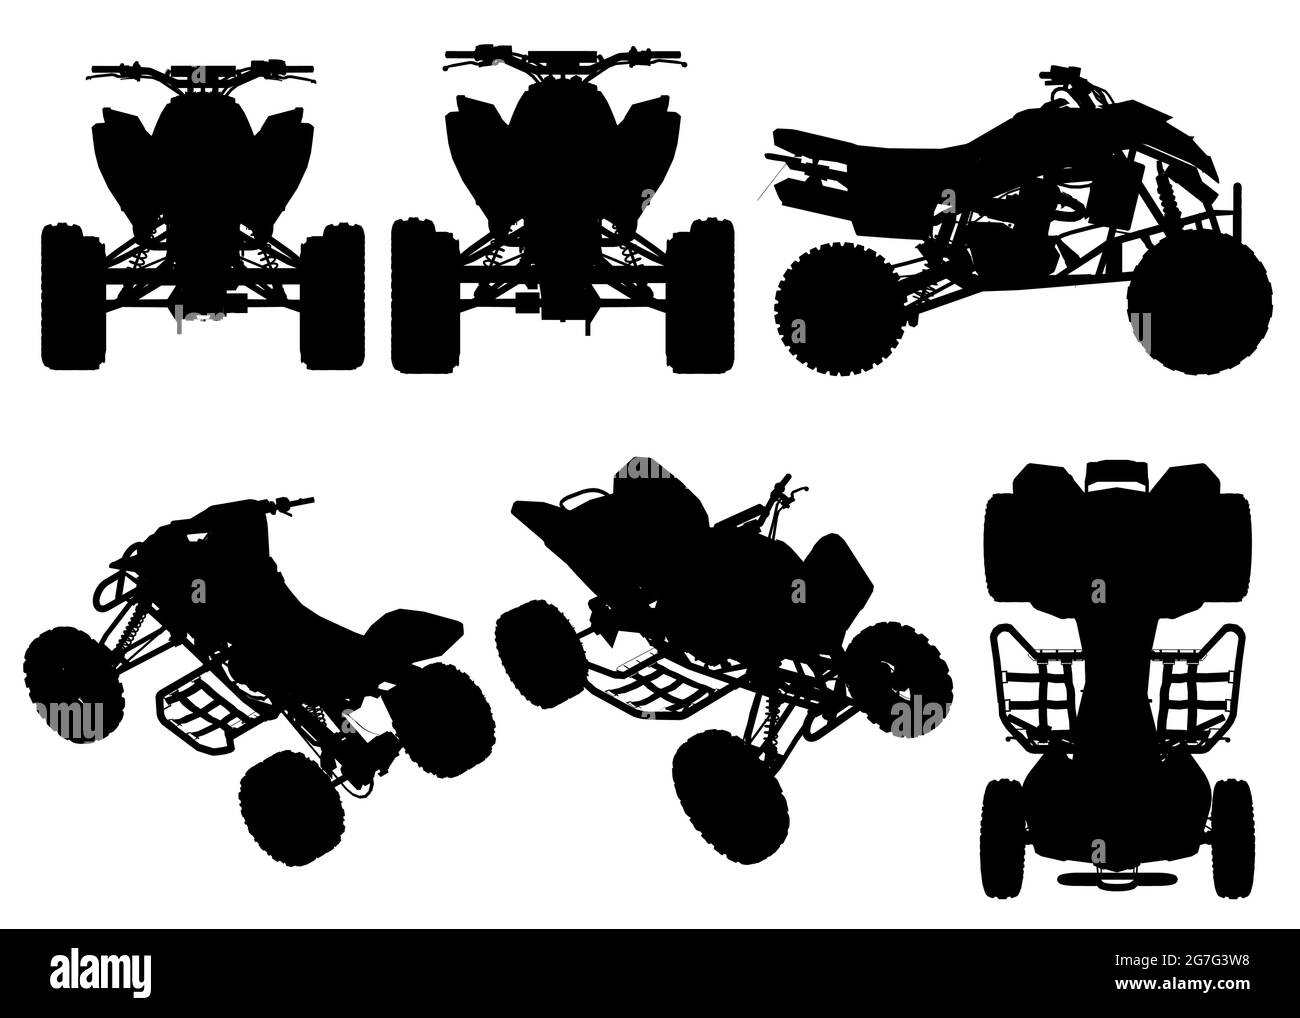 Ensemble avec silhouettes d'un quad dans différentes positions isolées sur un fond blanc. Illustration vectorielle. Illustration de Vecteur